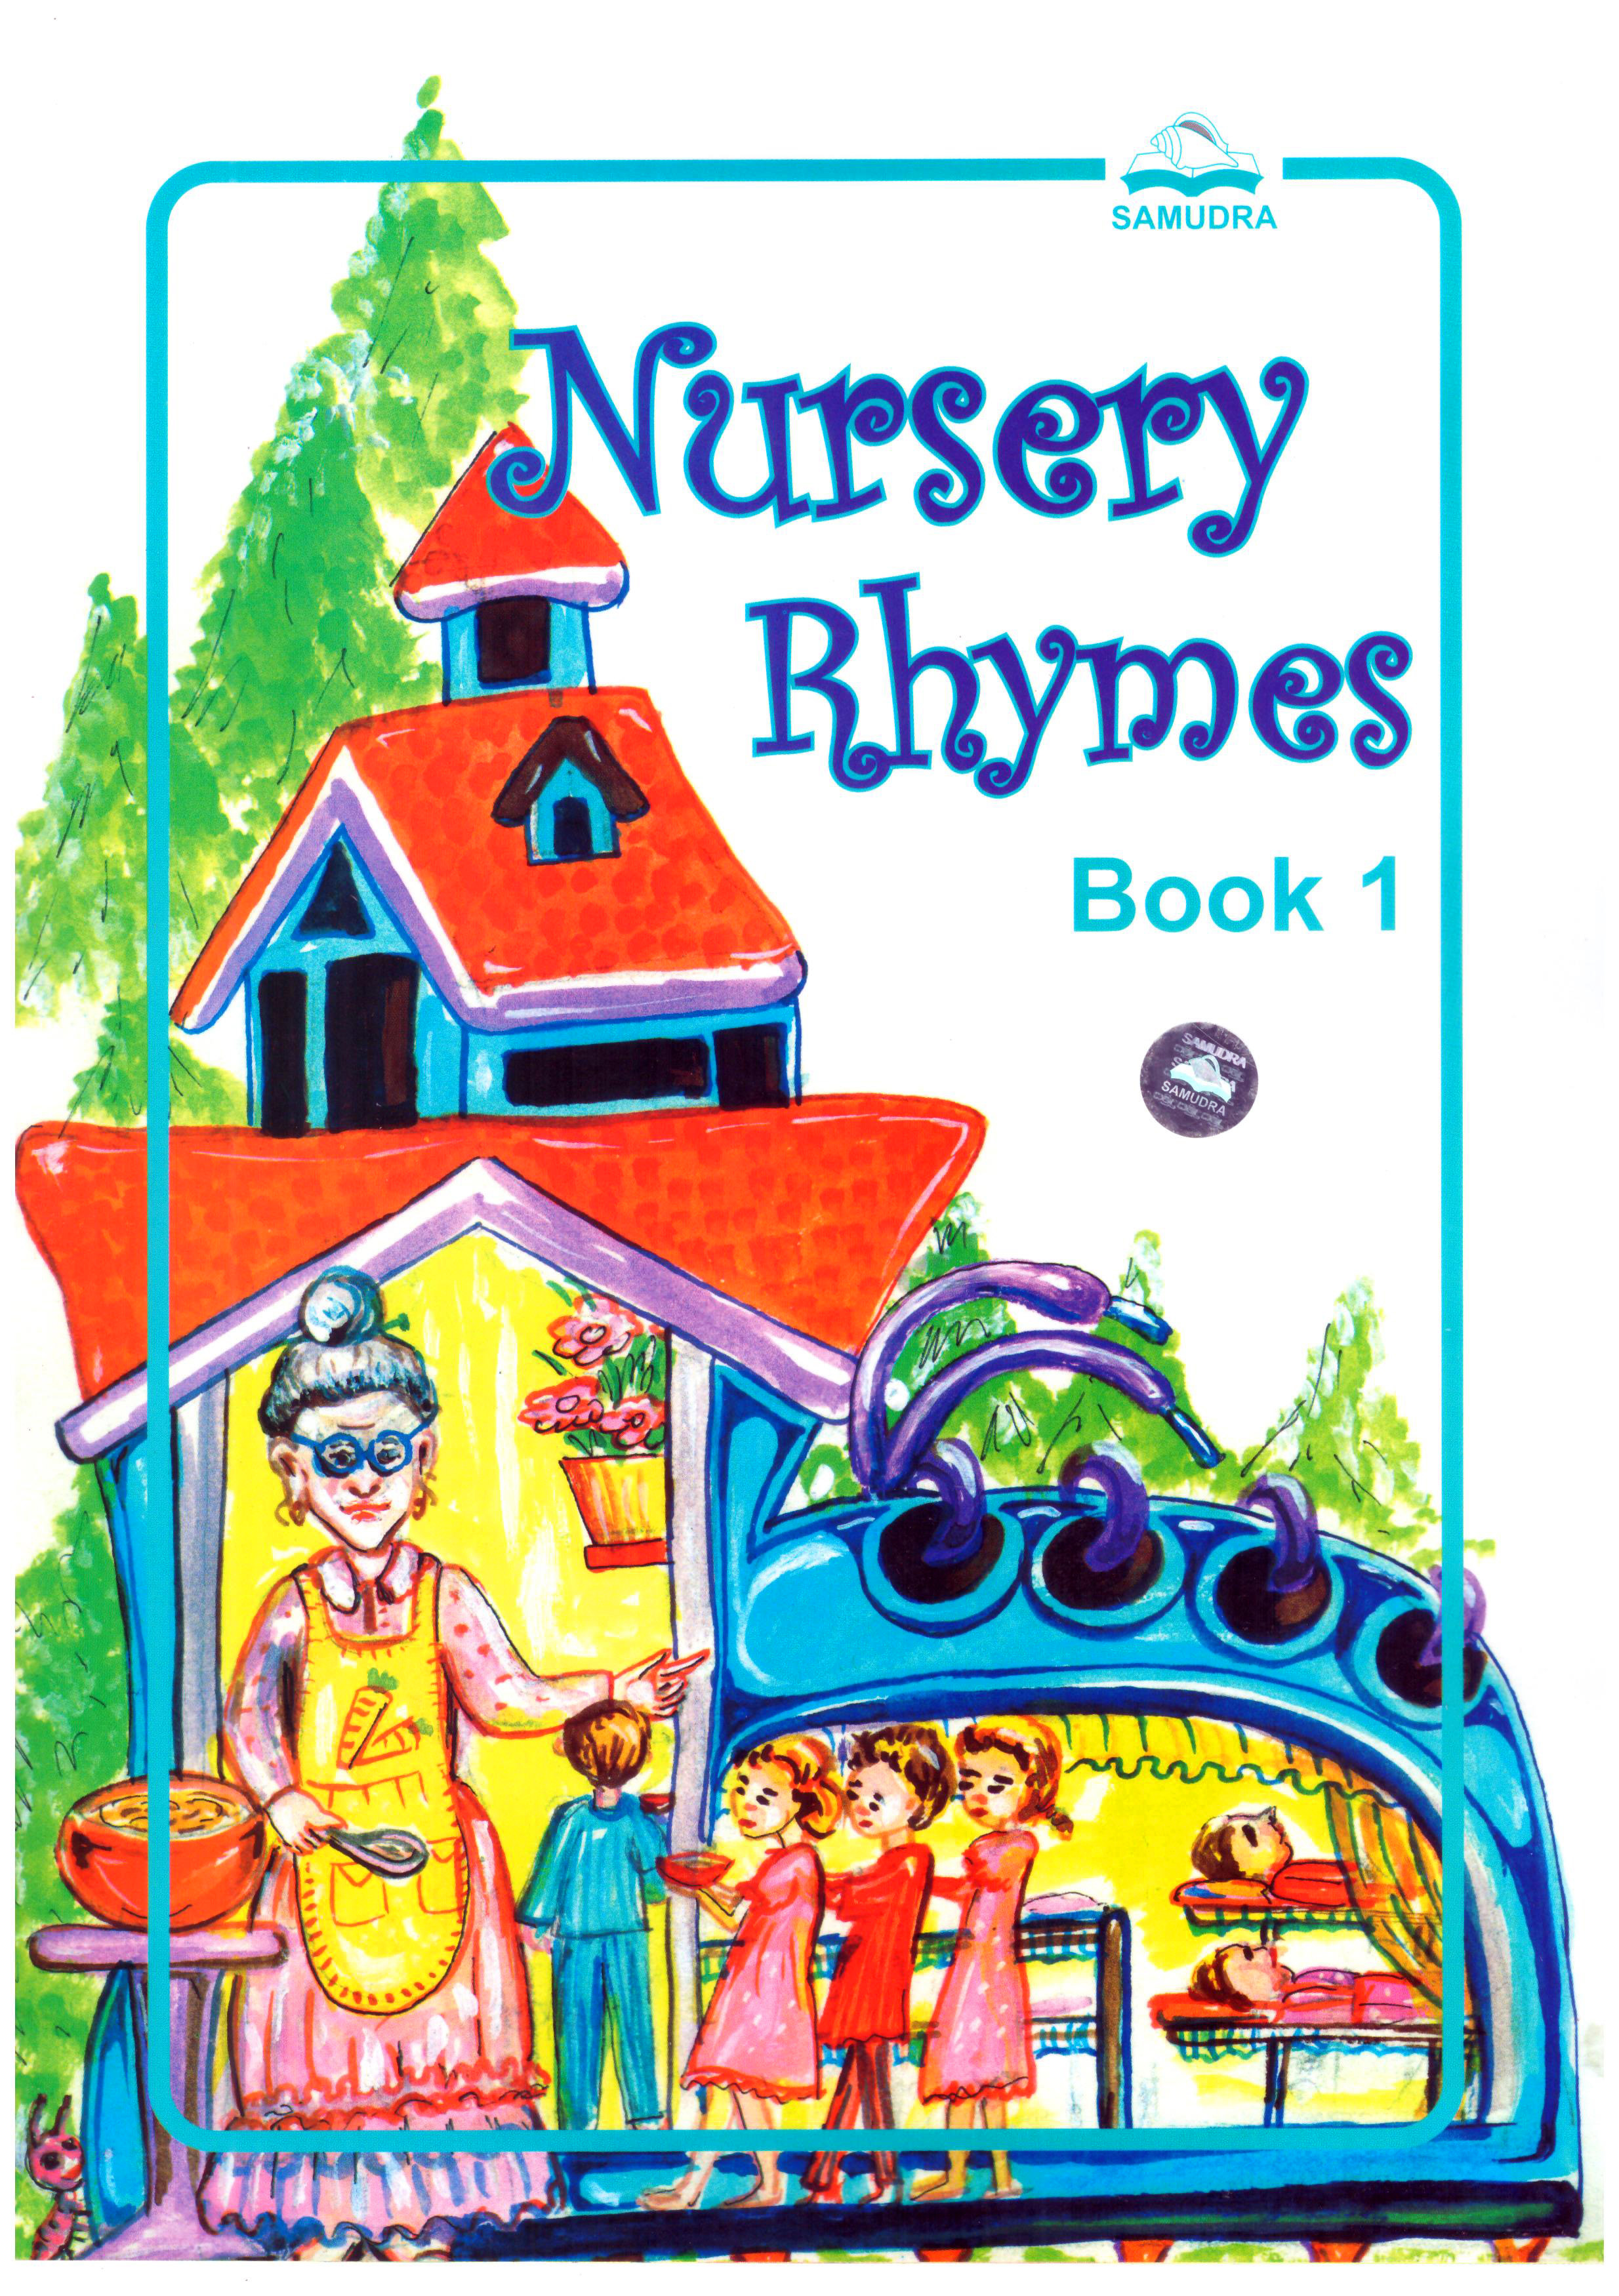 Nursery Rhymes Book 1